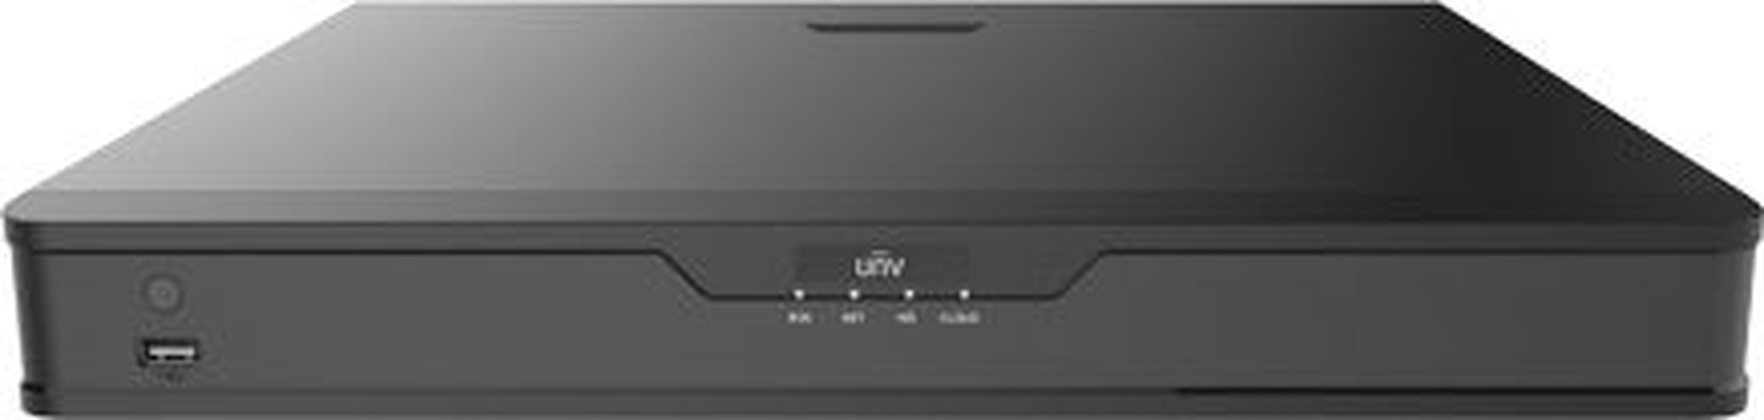 Видеорегистратор 8-канальный "Uniview" [NVR302-09S], 2xHDD, HDMI/VGA, RJ45